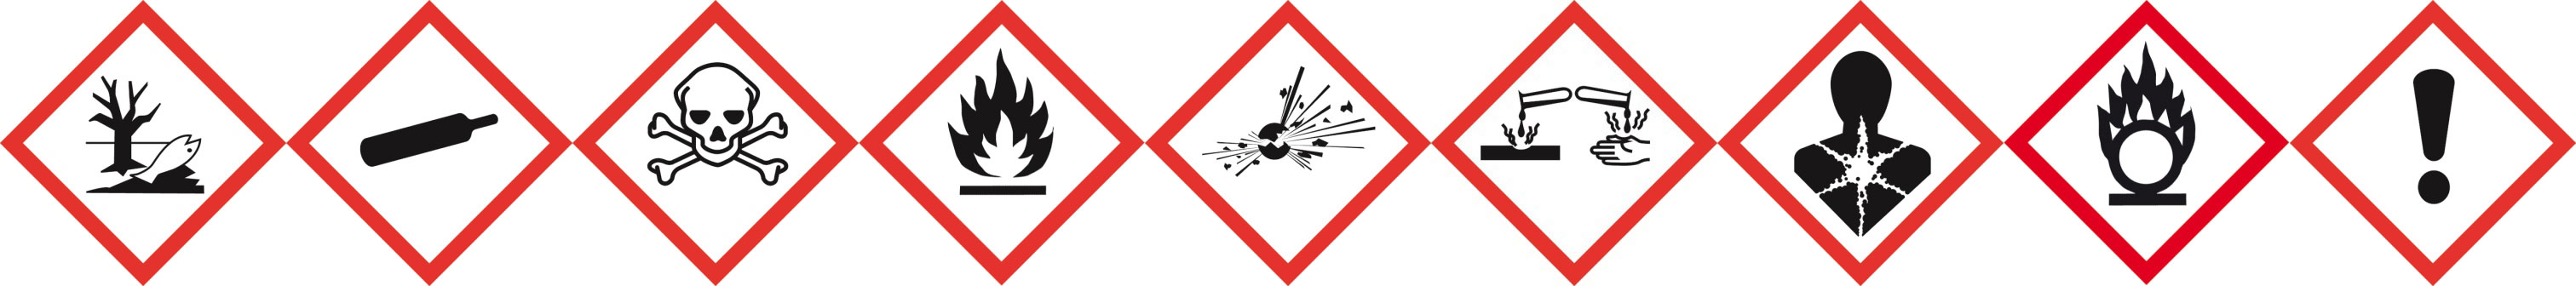 Gefahrstoffe beständig sicher lagern - Wartungen und sicherheitstechnische Überprüfungen von PROTECTO